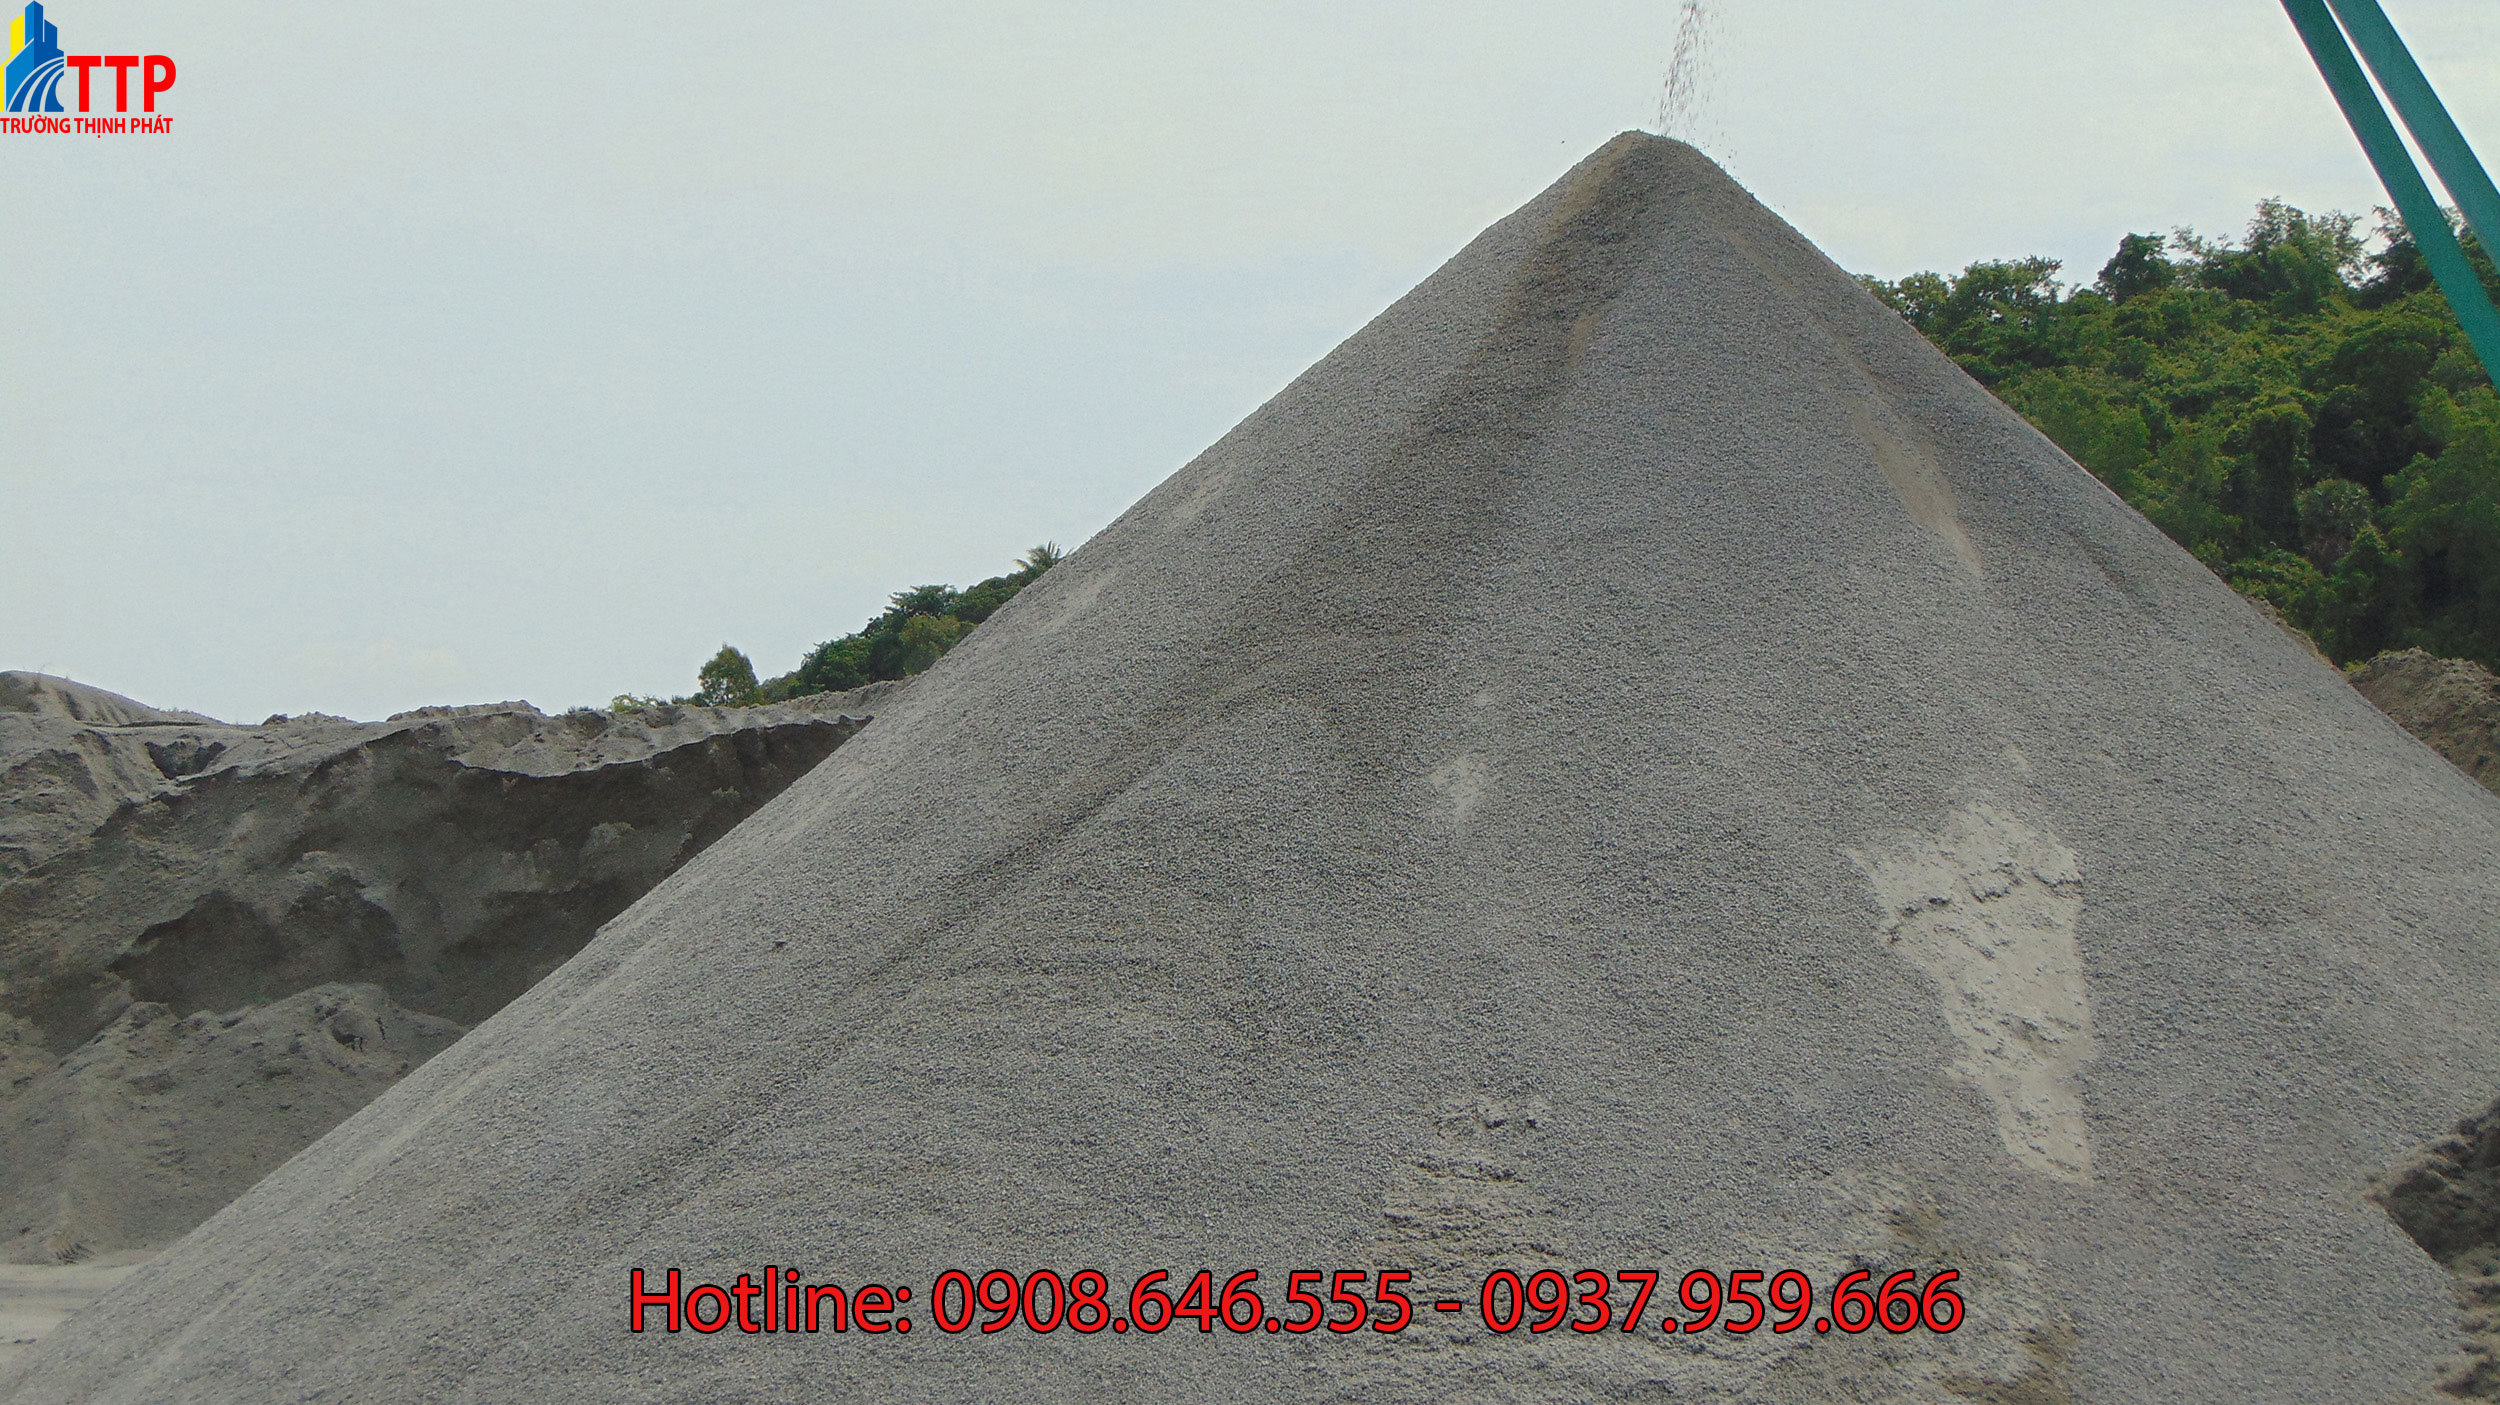 Bảng báo giá cát đá xây dựng Huyện Tân Biên Tỉnh Tây Ninh